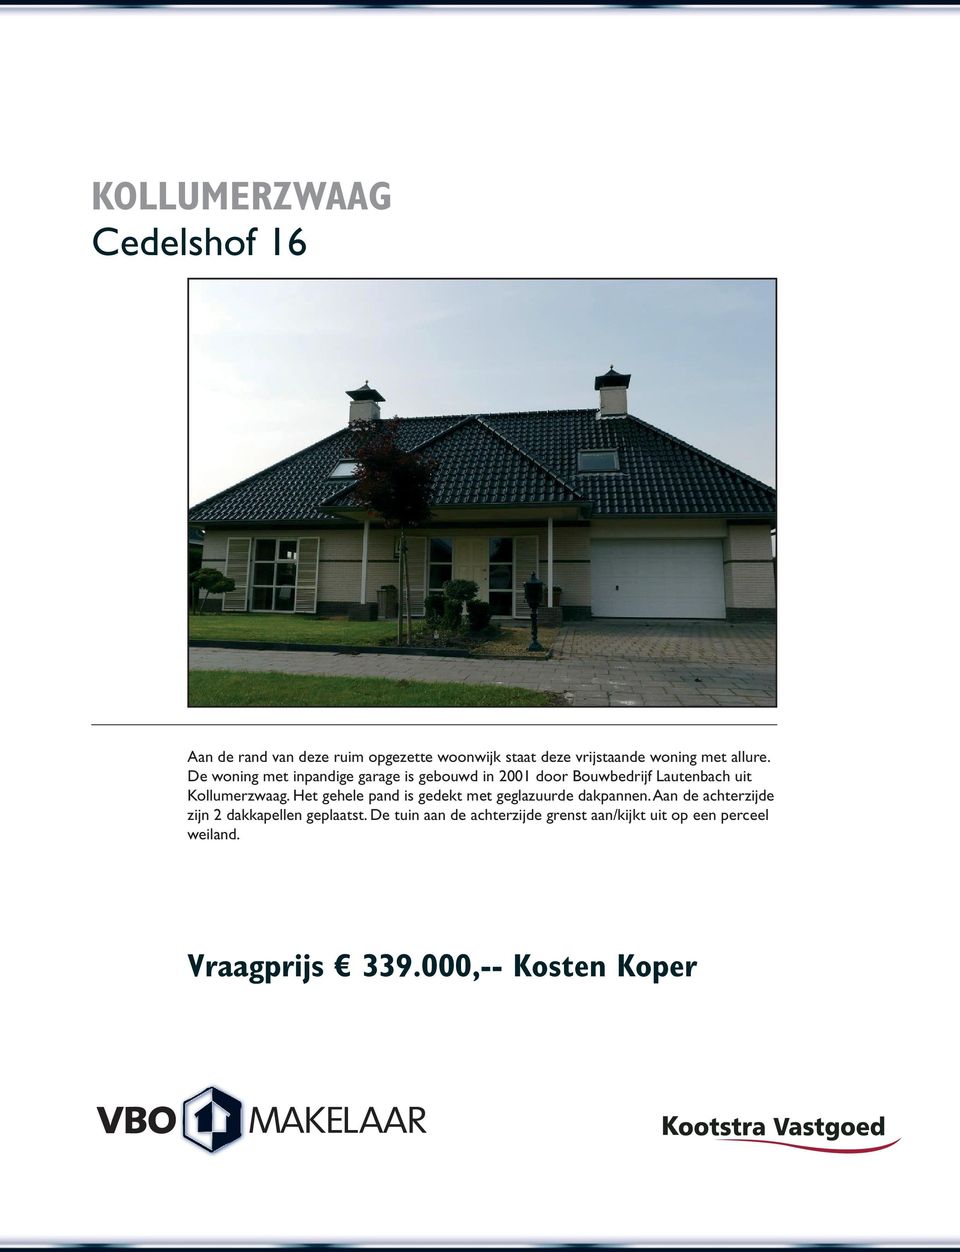 De woning met inpandige garage is gebouwd in 2001 door Bouwbedrijf Lautenbach uit Kollumerzwaag.